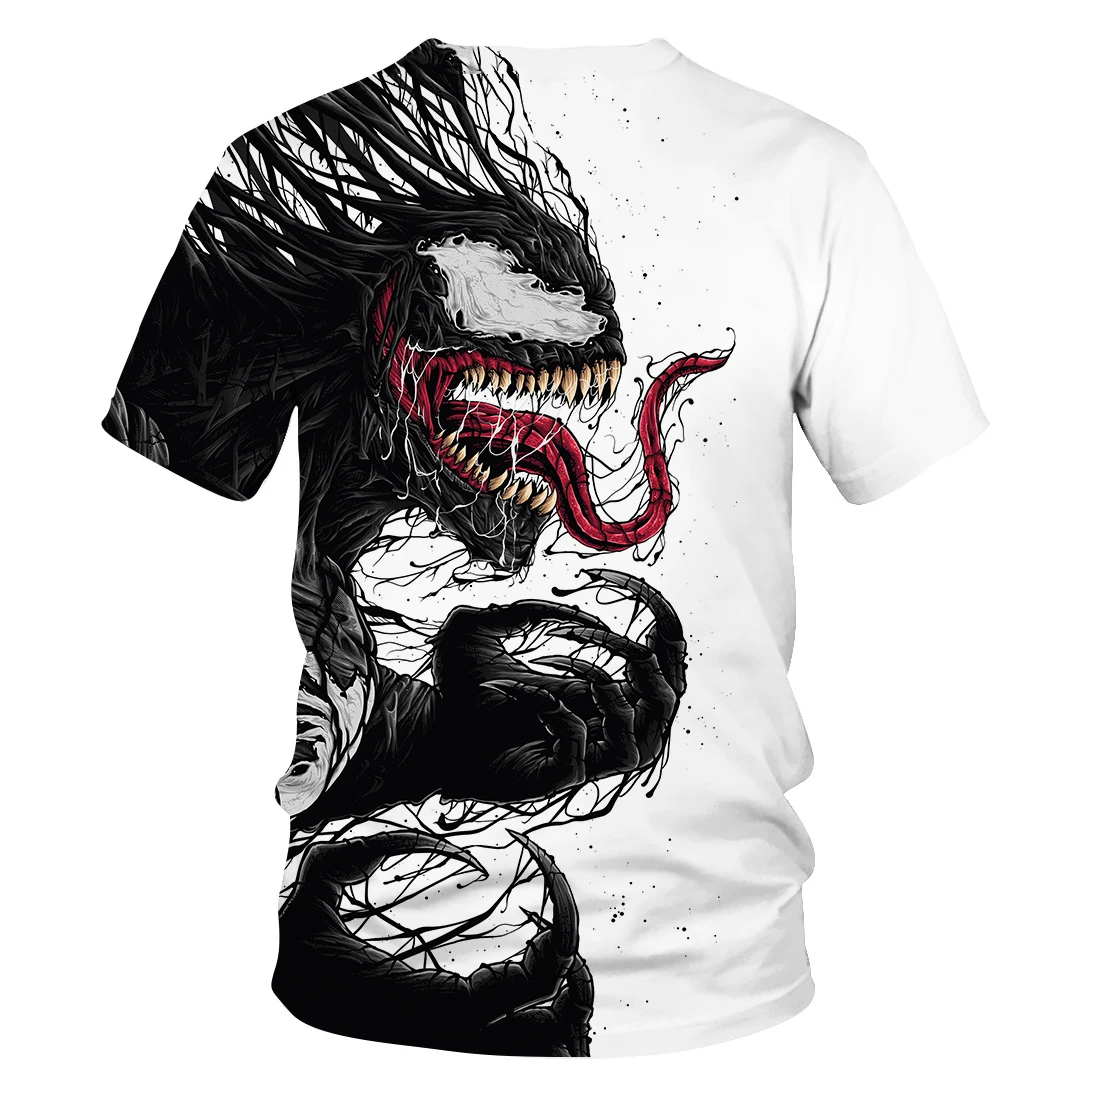 Для детей от 3 до 14 лет детская футболка фильм Venom 3D печатных с коротким рукавом на